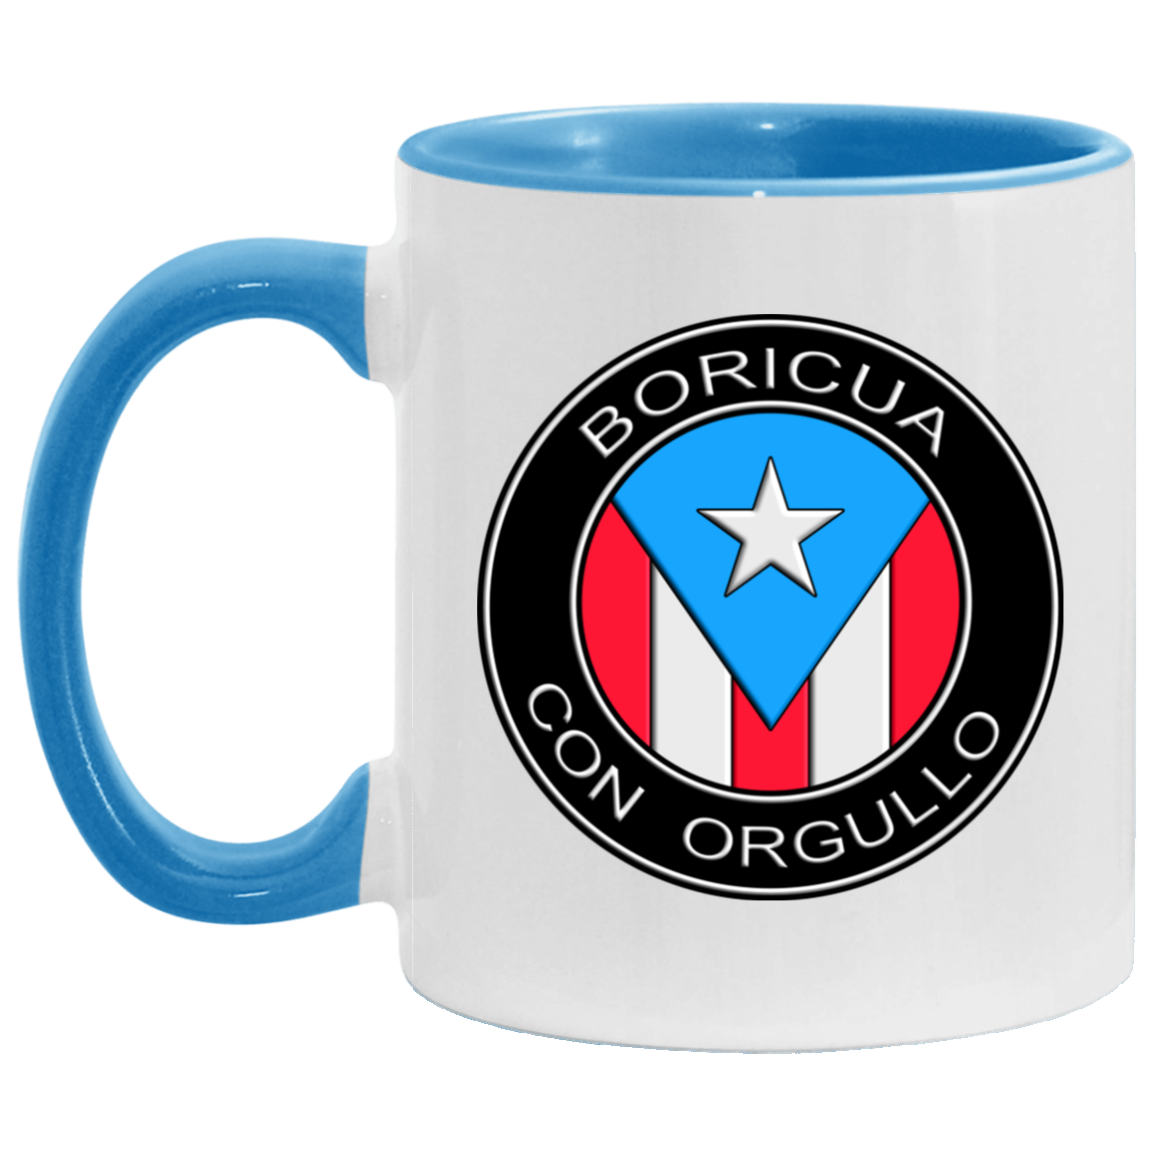 Boricua Con Orgullo 11OZ Accent Mug - Puerto Rican Pride